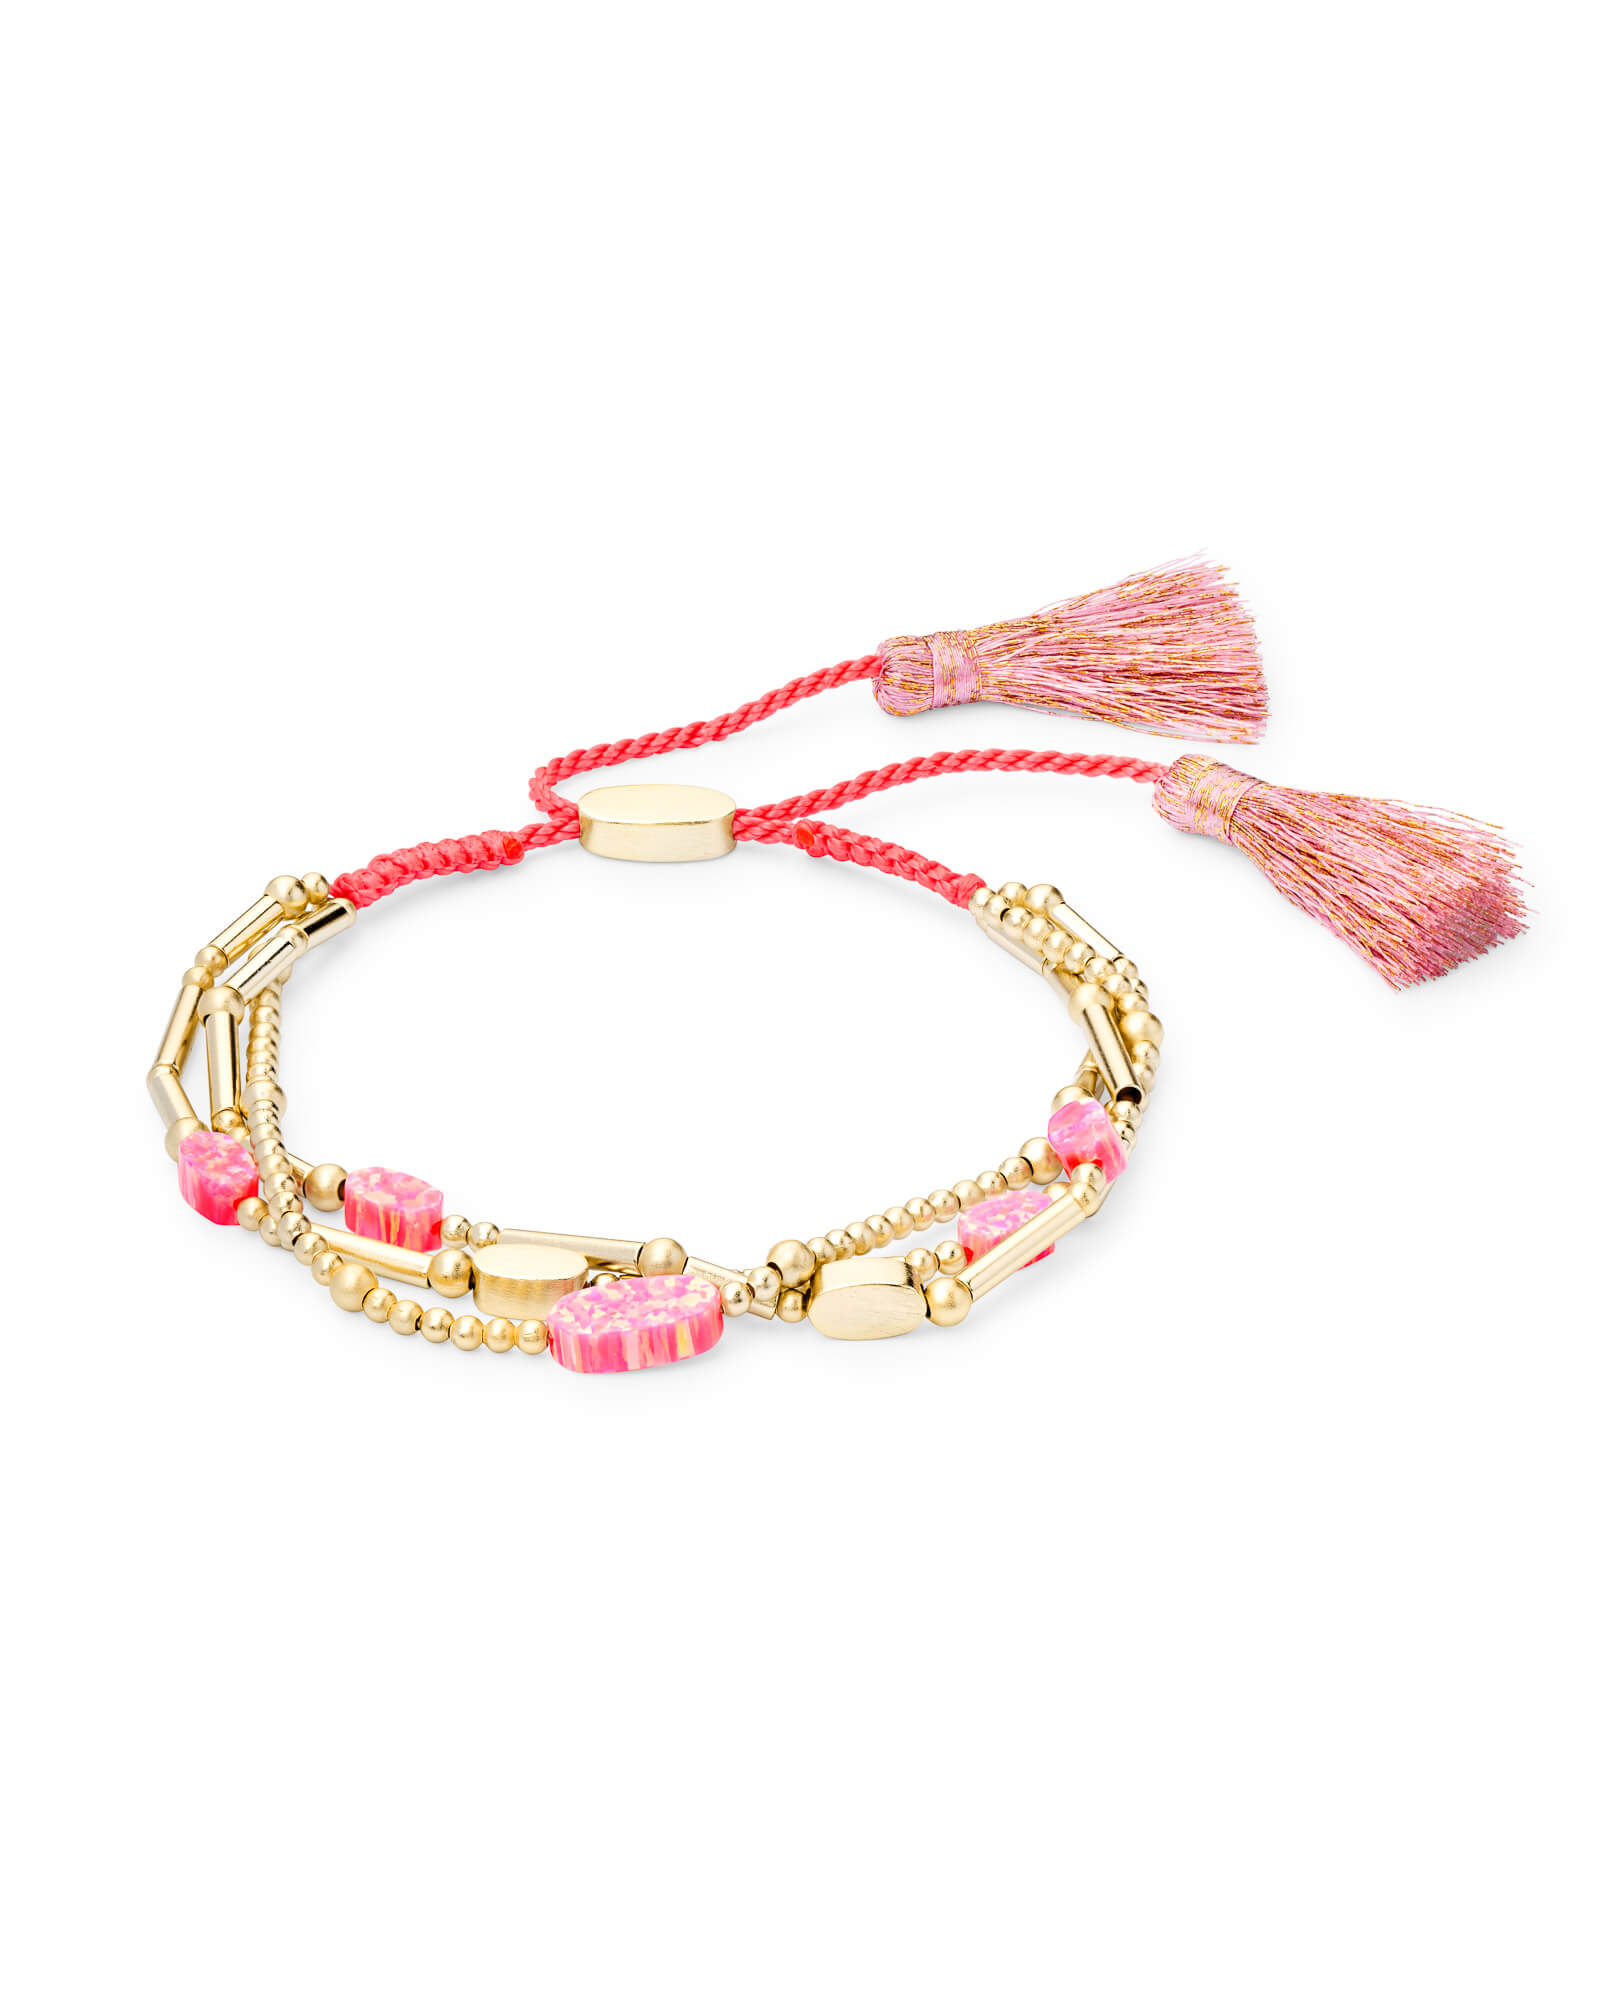 Chantal Gold Beaded Bracelet in Hot Pink Kyocera Opal | Kendra Scott